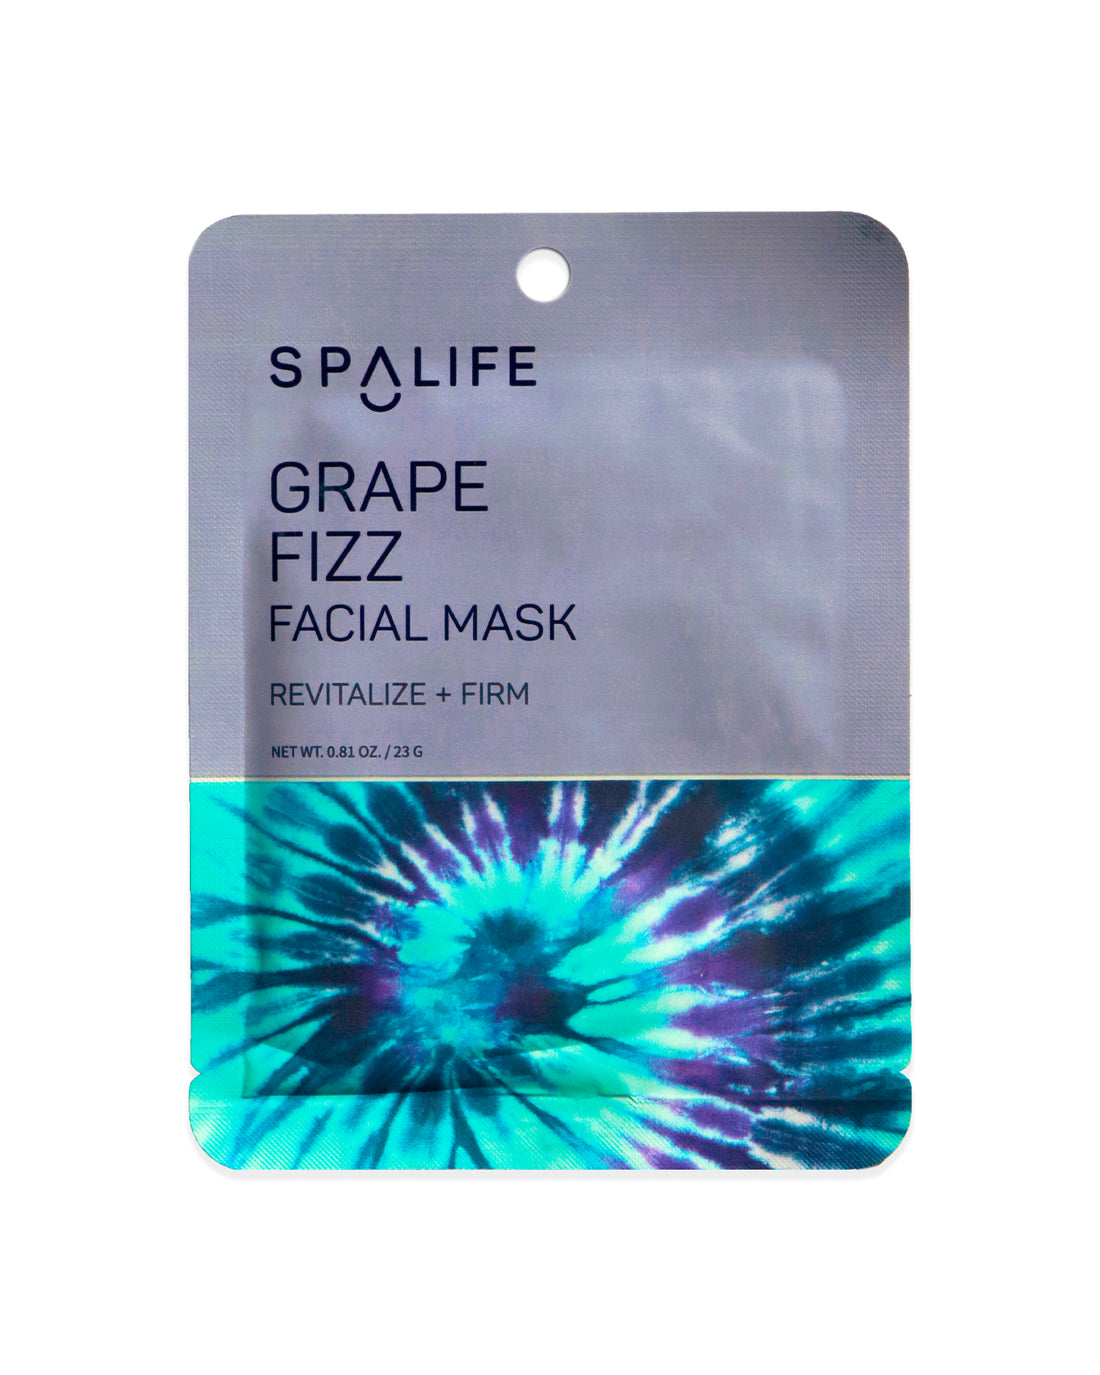 Grape_fizz_facial_mask_packet-680